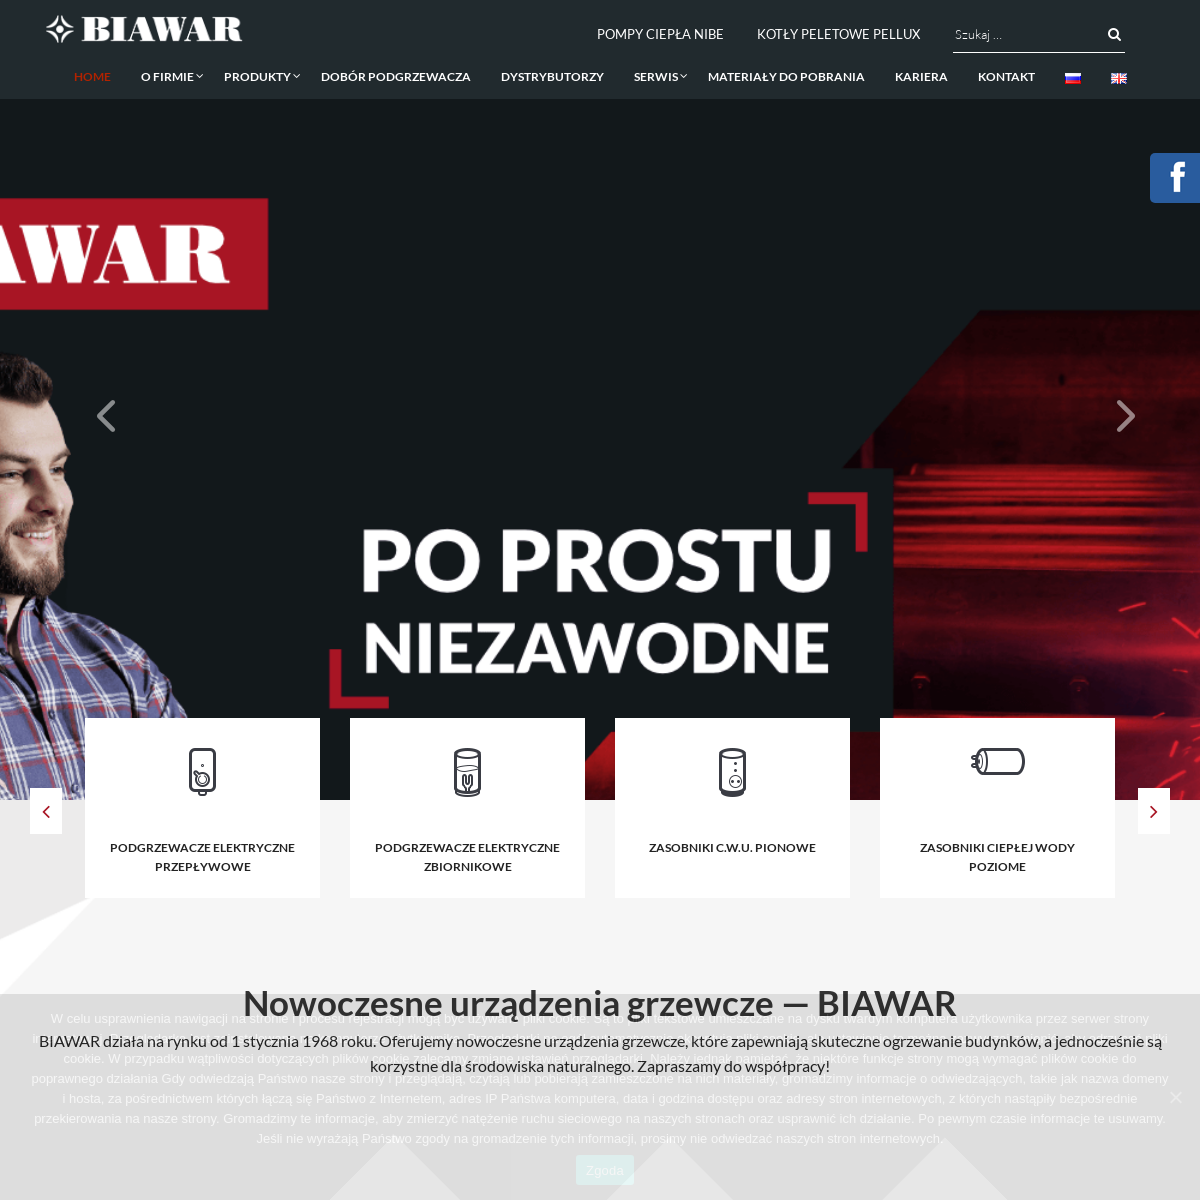 A complete backup of biawar.com.pl